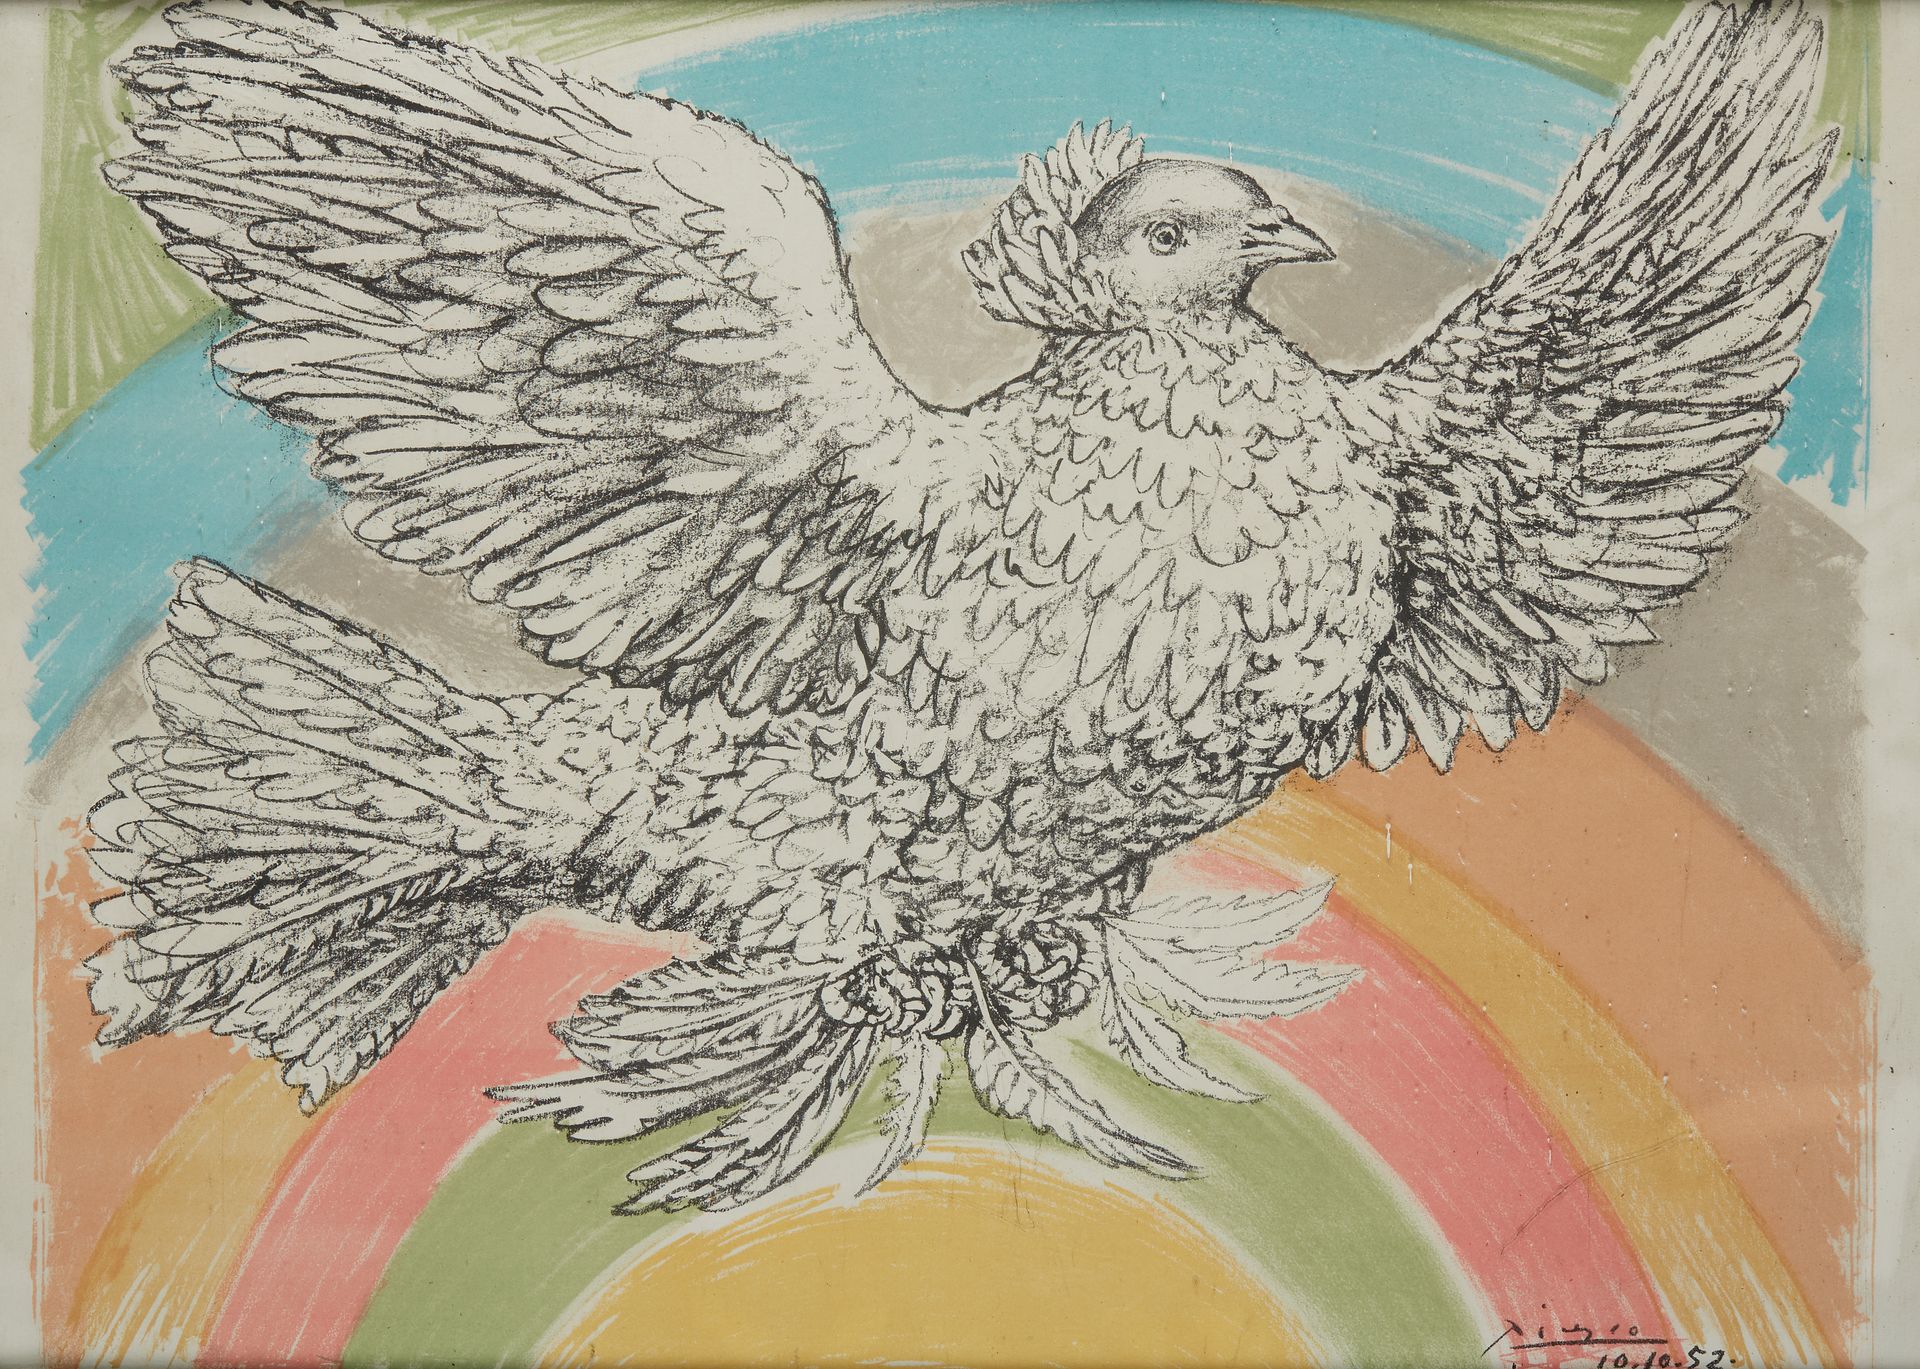 Null 巴勃罗-皮卡索 (1881 - 1973)

飞翔中的鸽子与彩虹。10-10-52.

彩色平版印刷在拱形牛皮纸上，用于和平运动的海报 "和平、裁军促&hellip;